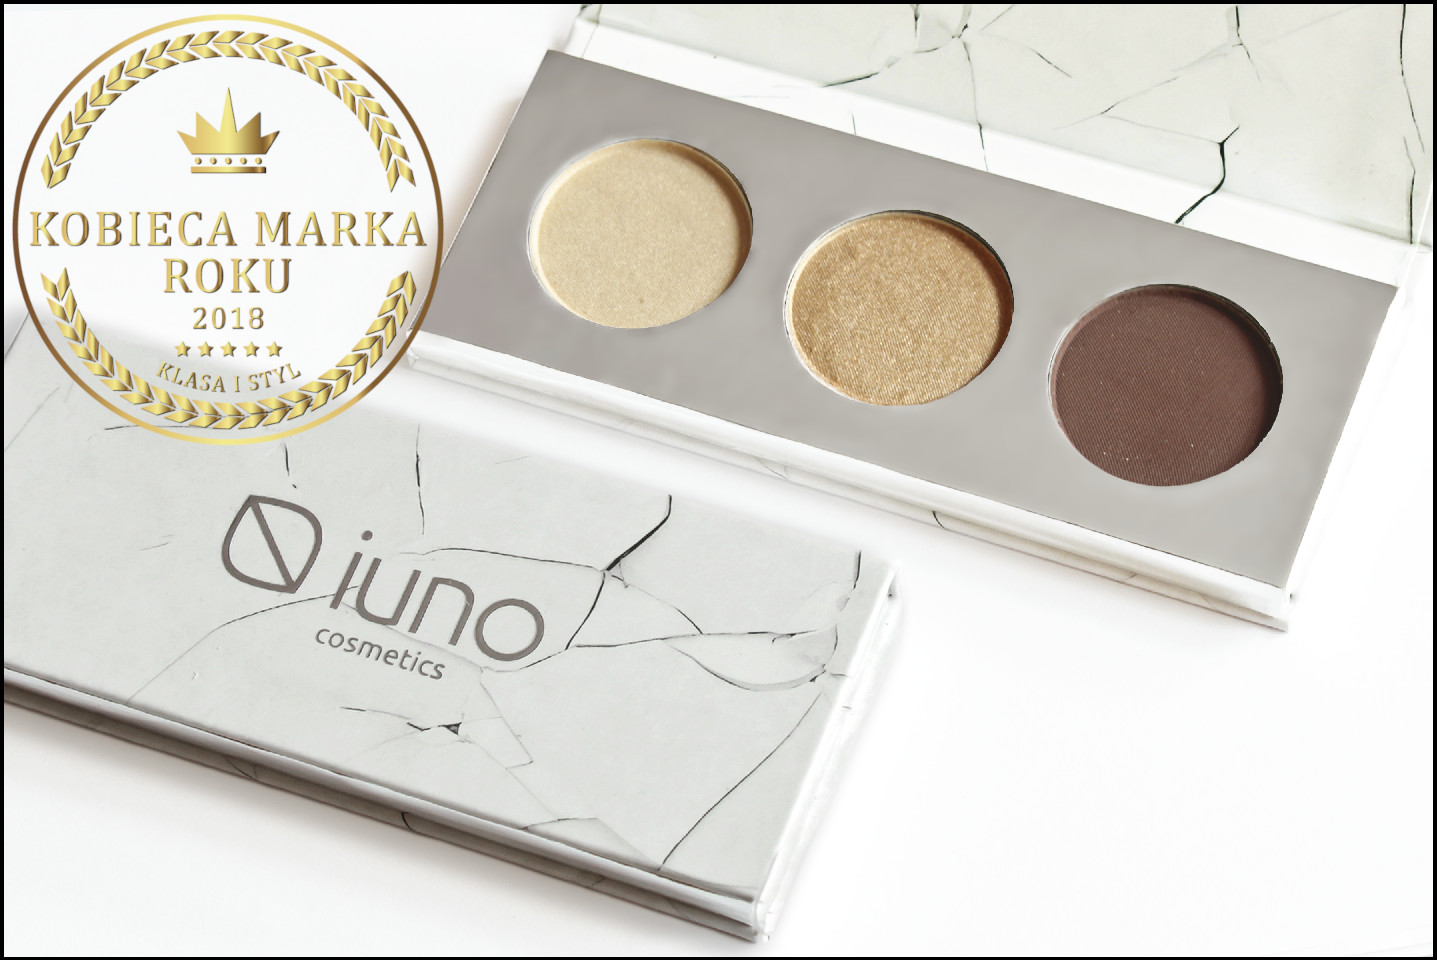 Marka IUNO Cosmetics otrzymała tytuł Kobiecej Marki Roku 2018